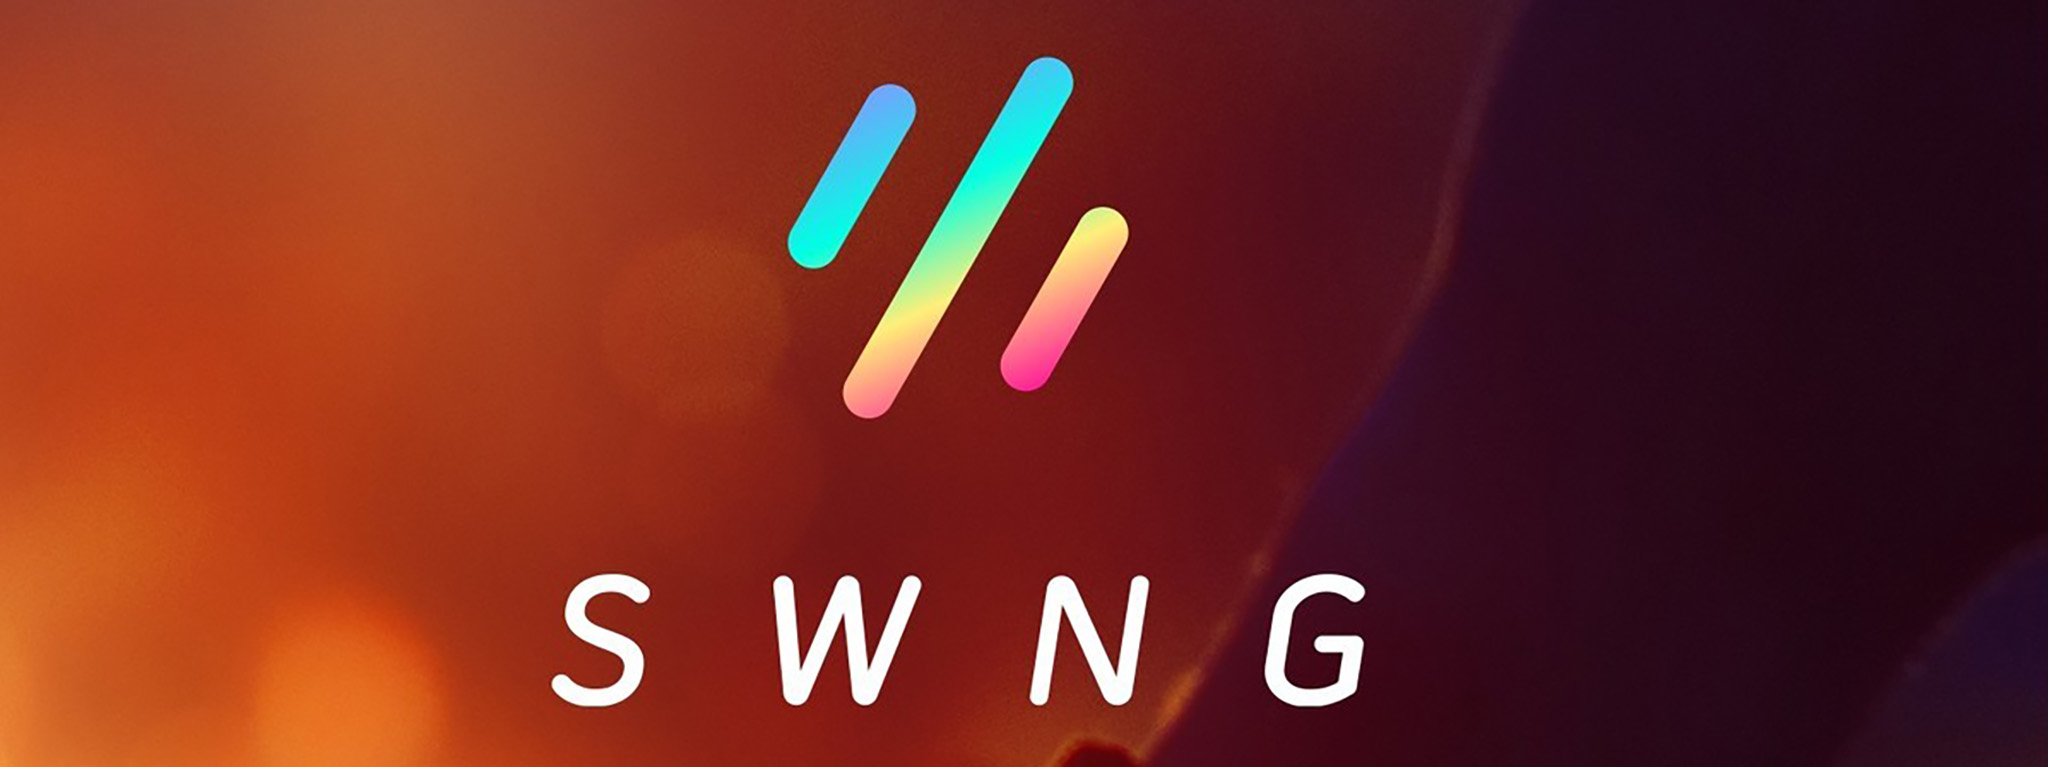 Microsoft mua lại Swing - nhà phát triển ứng dụng ảnh động tương tác SWNG nổi tiếng trên App Store